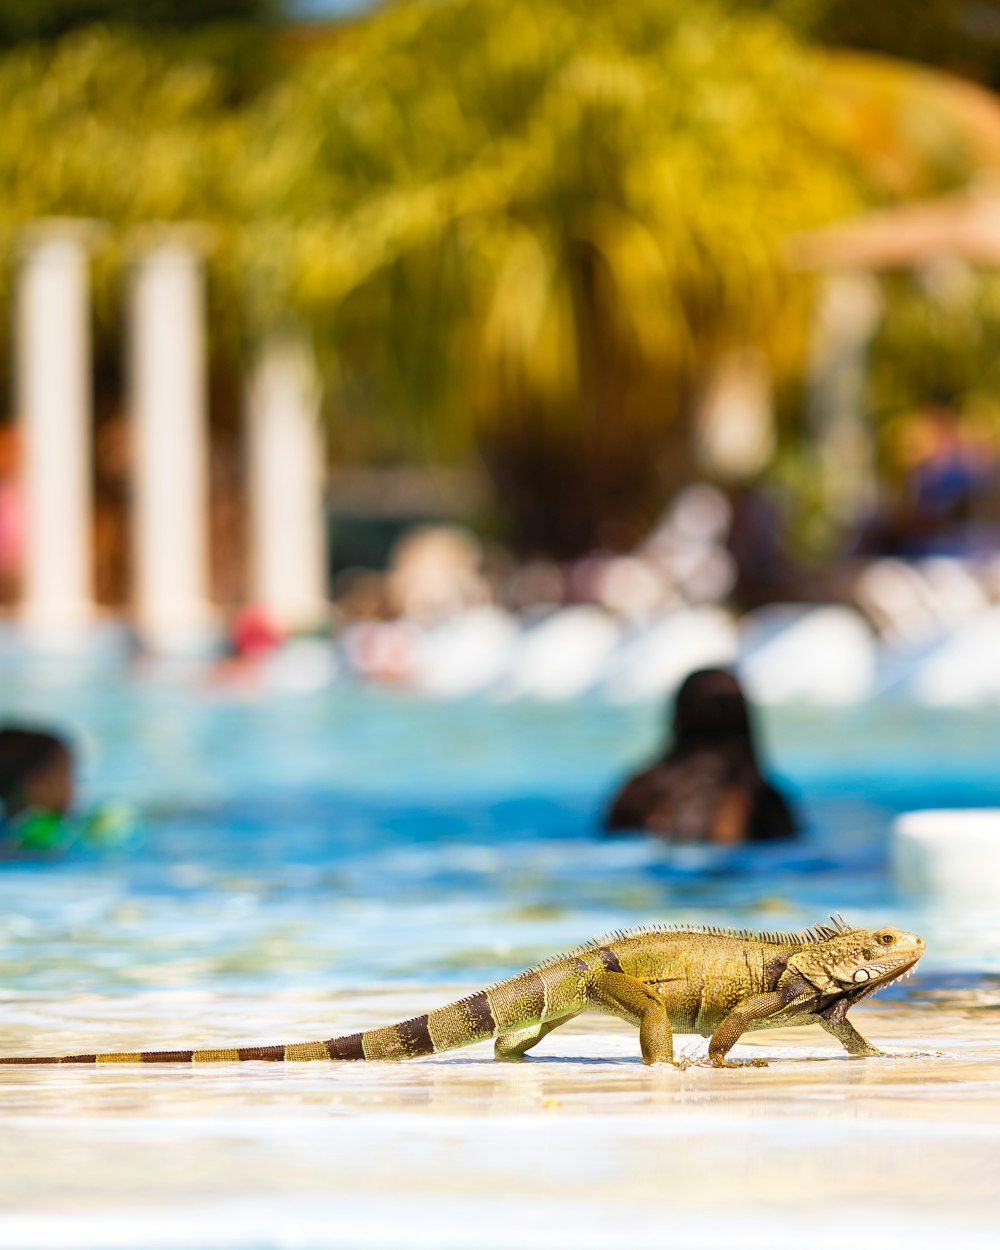 Fotografia de foco seletivo de Iguana perto da piscina